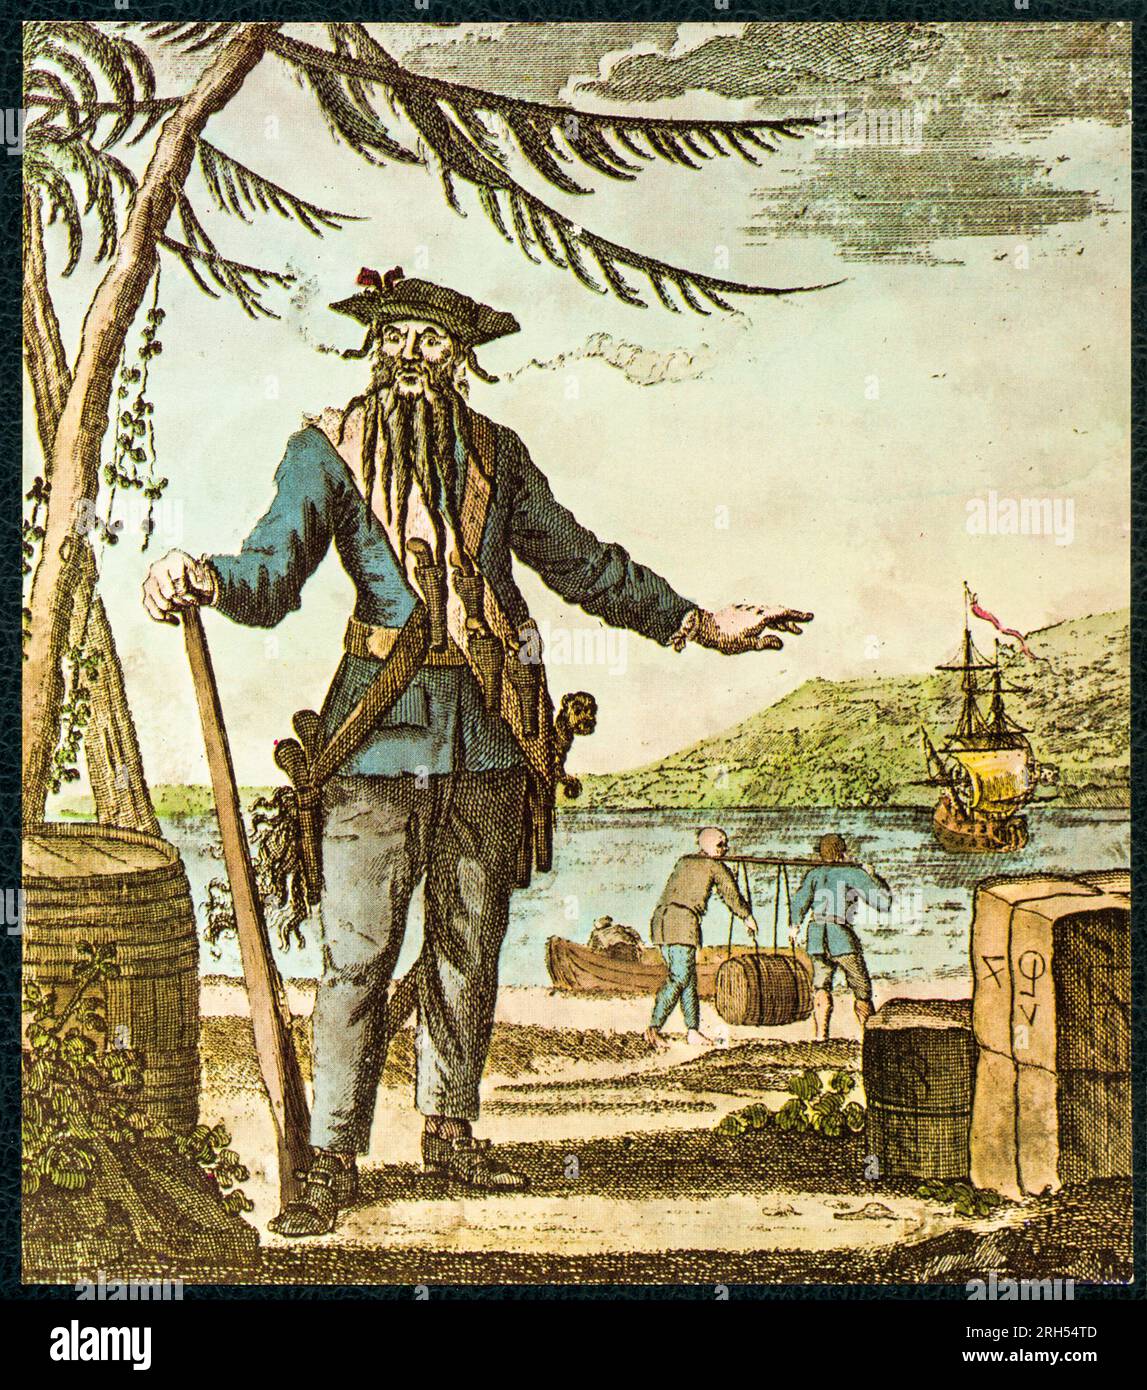 Edward Teach (alternativ Edward Thatch, ca. 1680. Bis 22. November 1718), besser bekannt als Blackbeard, war ein englischer Pirat, der um die Westindischen Inseln und die Ostküste der nordamerikanischen Kolonien Großbritanniens operierte. Stockfoto